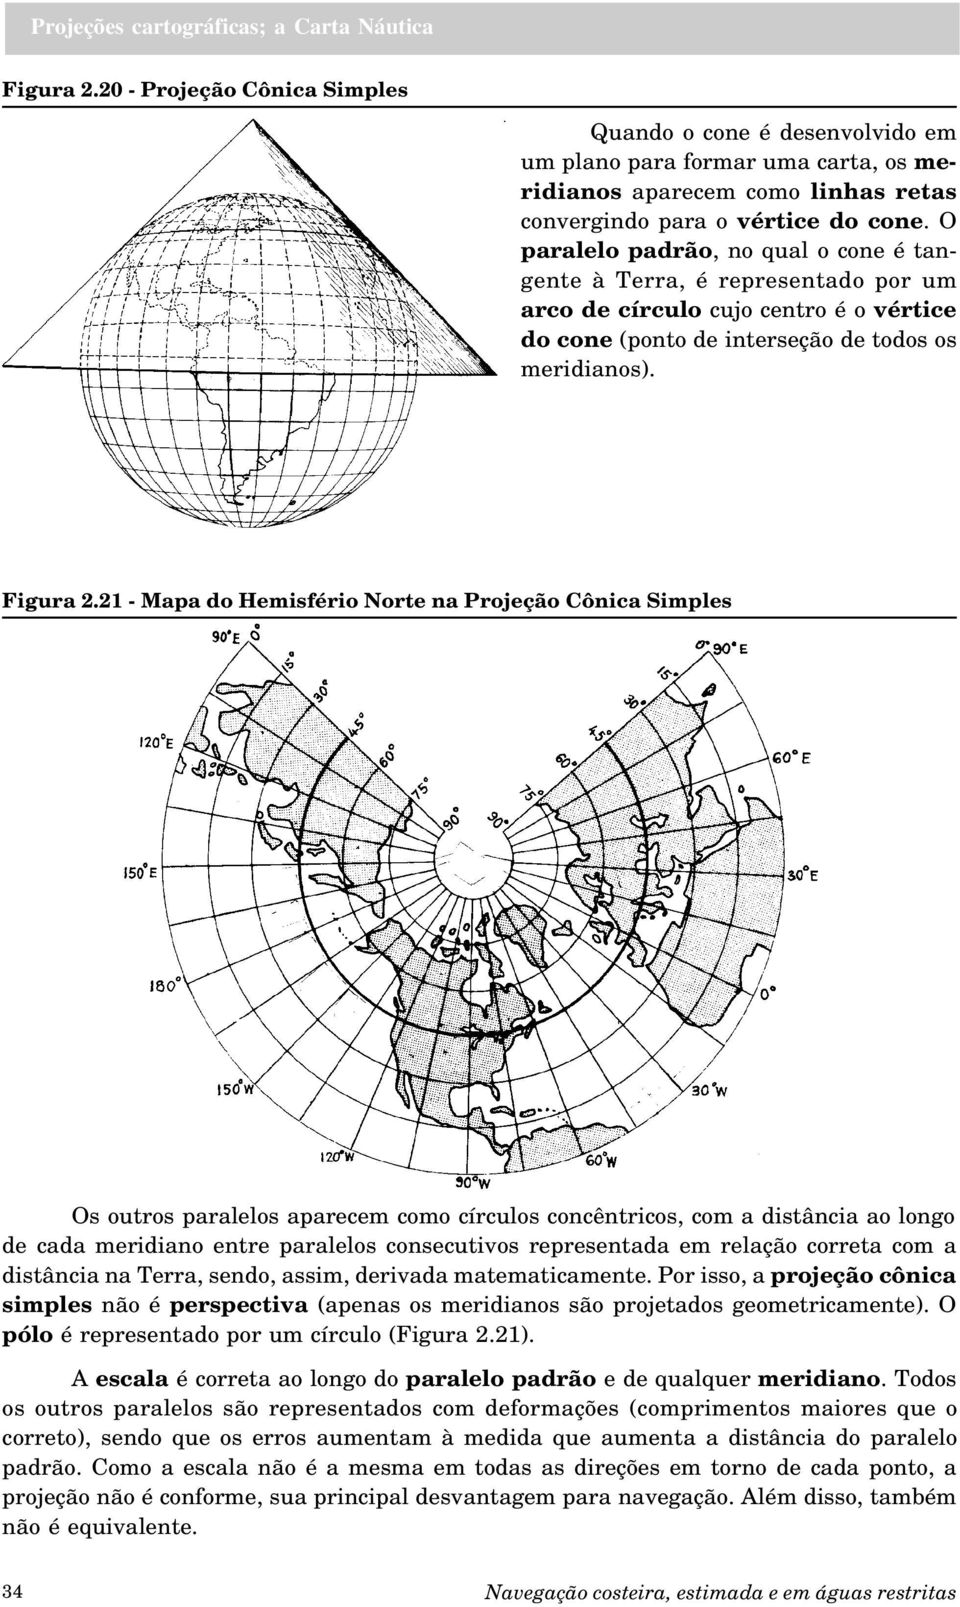 21 - Mapa do Hemisfério Norte na Projeção Cônica Simples Os outros paralelos aparecem como círculos concêntricos, com a distância ao longo de cada meridiano entre paralelos consecutivos representada